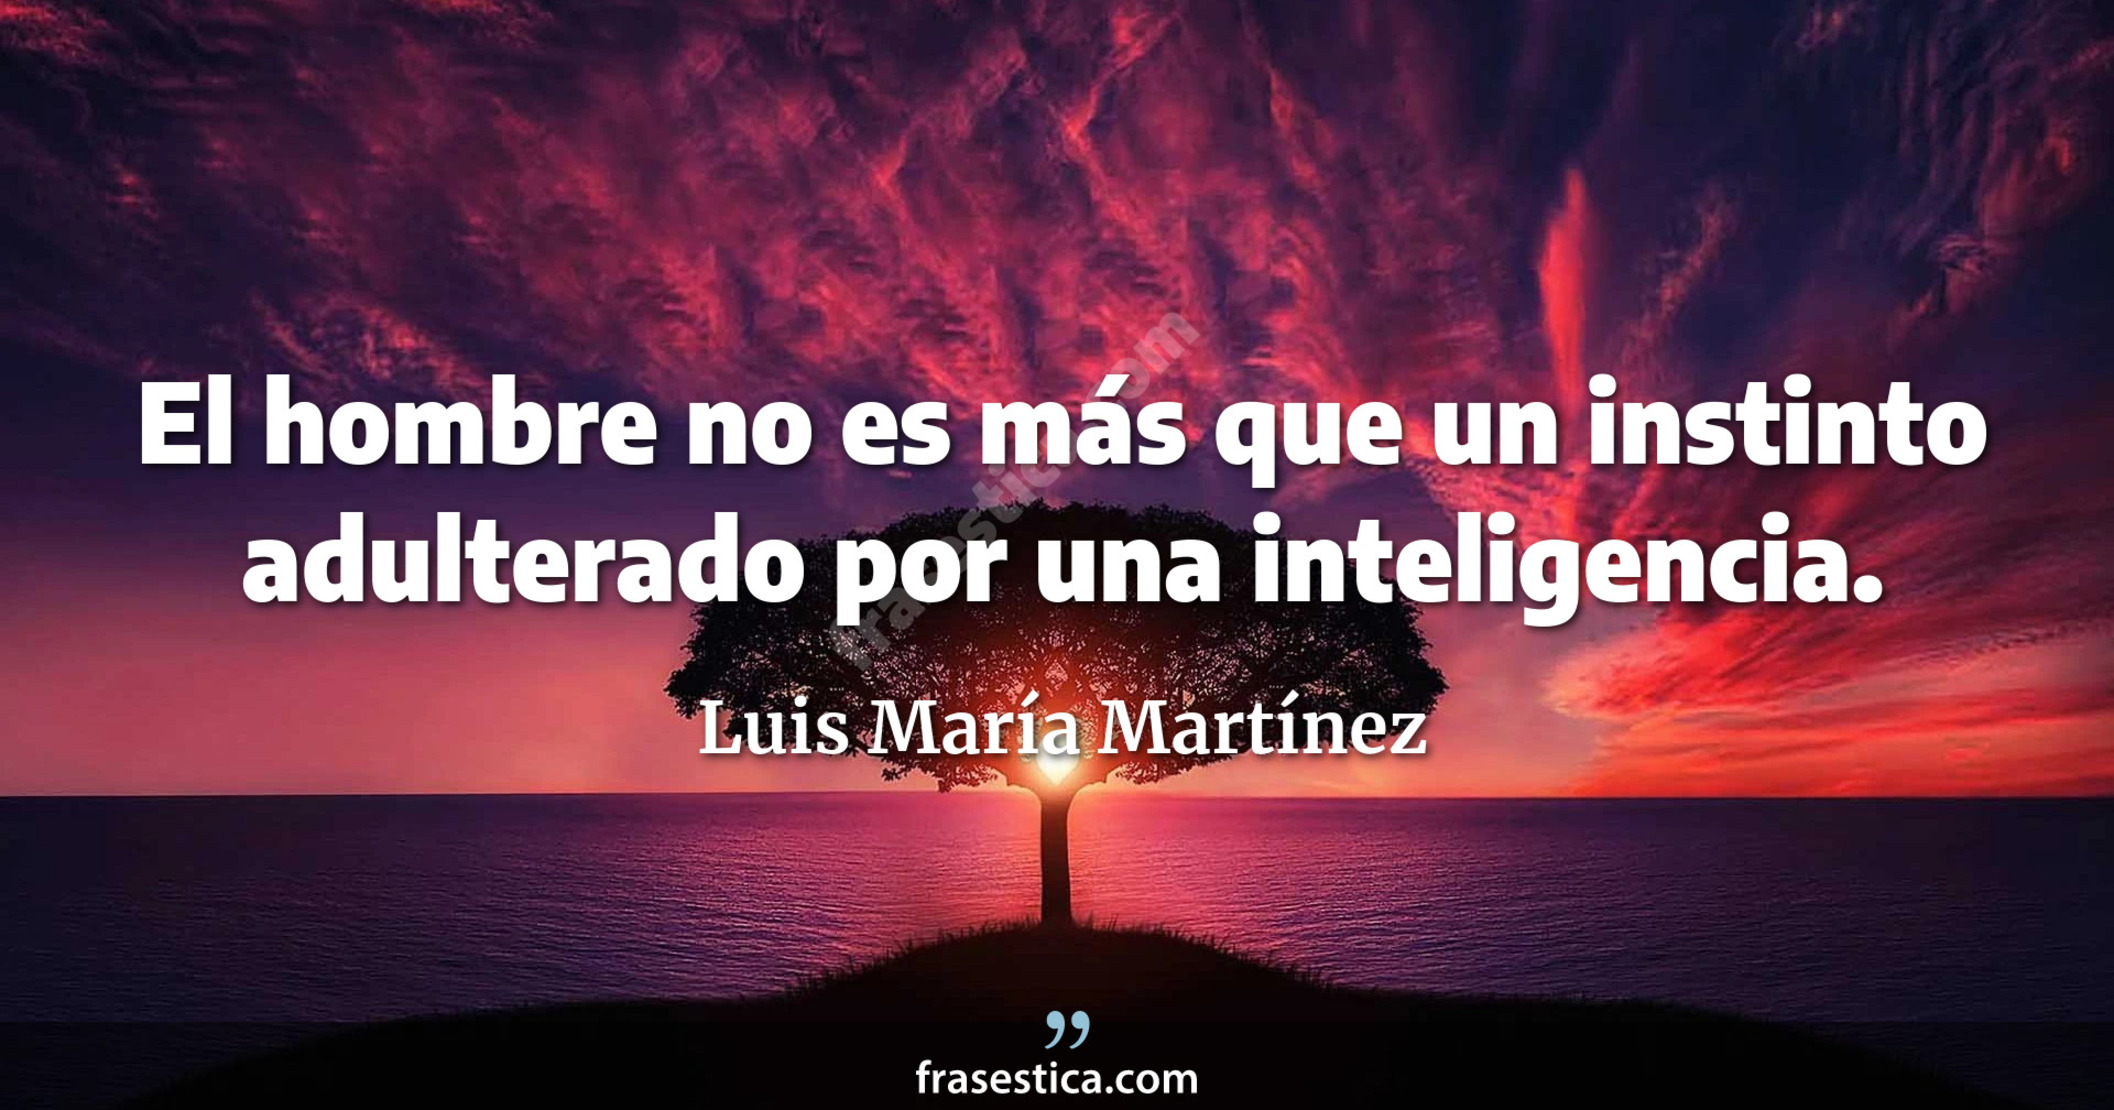 El hombre no es más que un instinto adulterado por una inteligencia. - Luis María Martínez